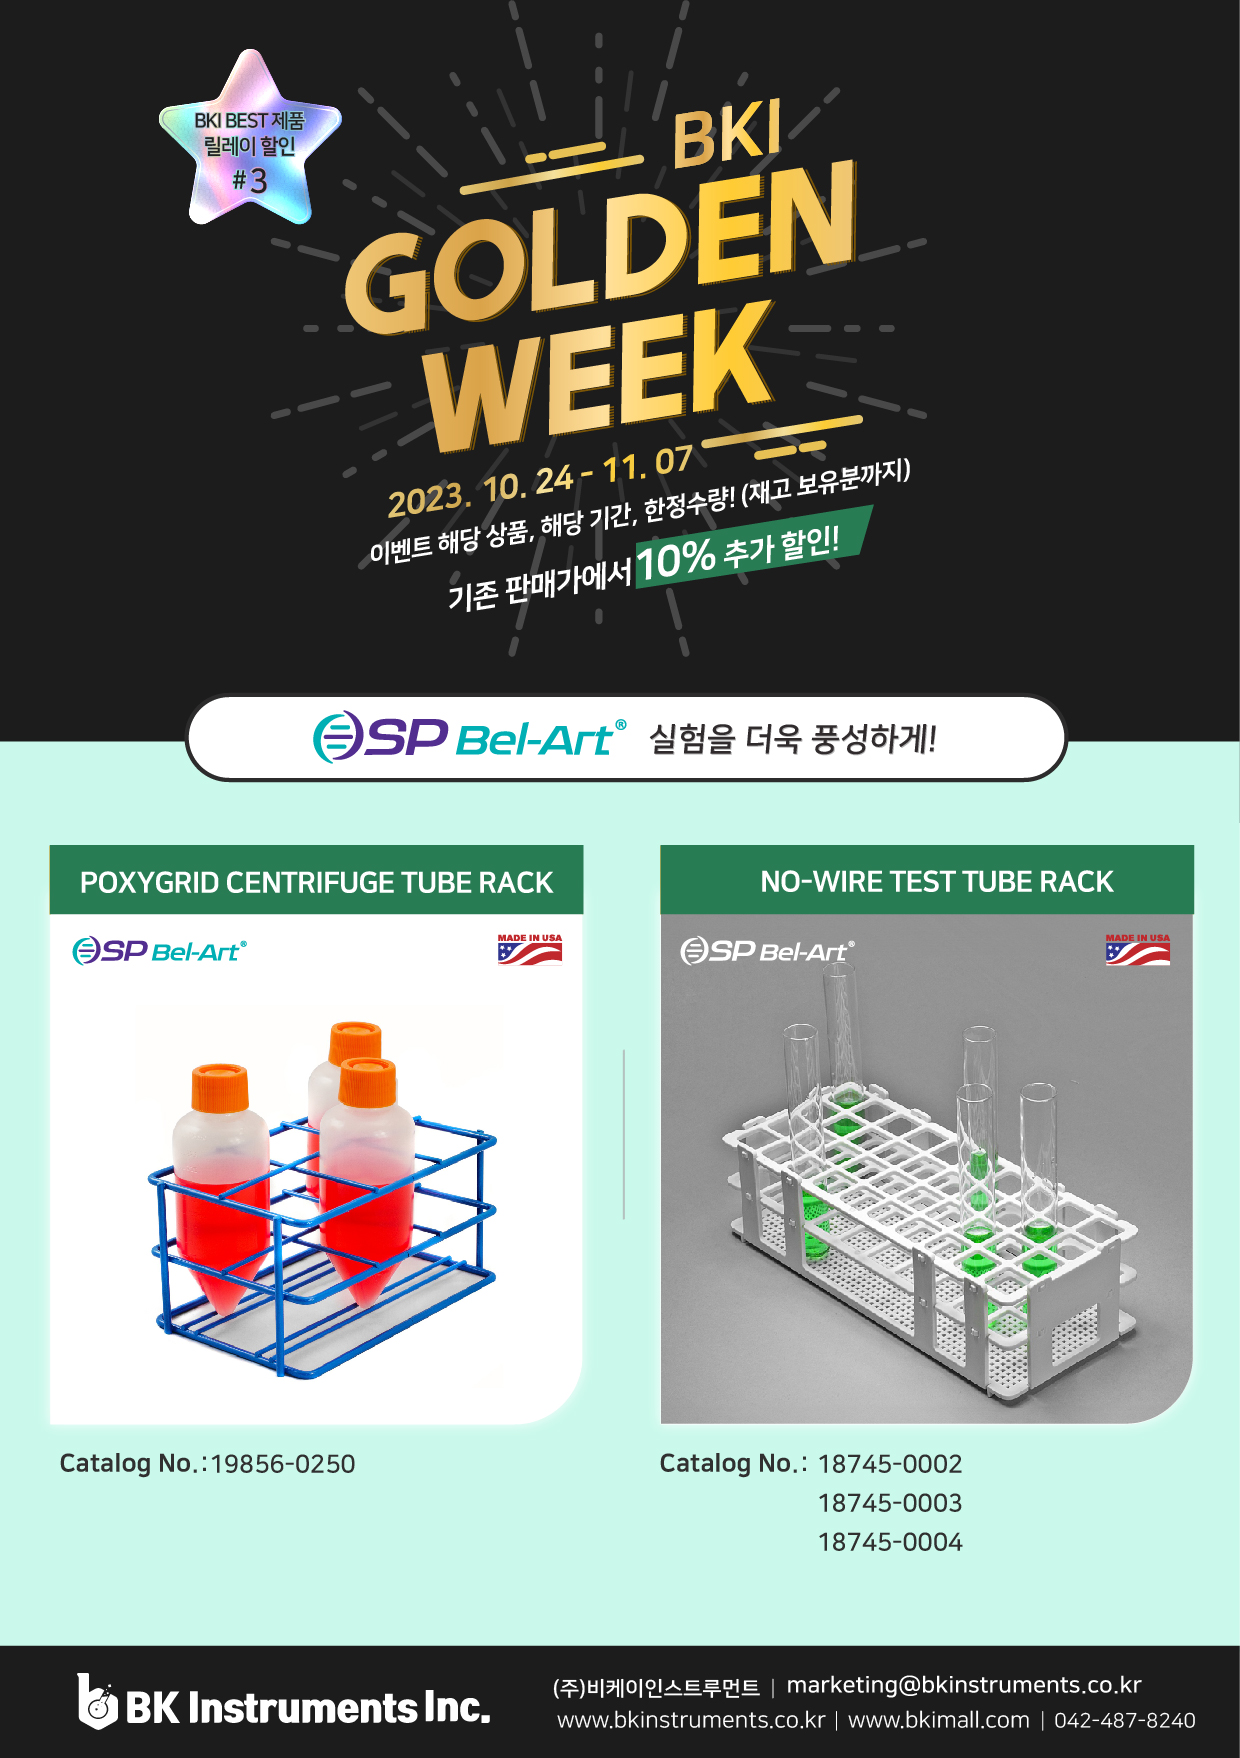 [기획전] BKI Golden Week #3 (TUBE RACK) 23. 10. 24 - 11. 07